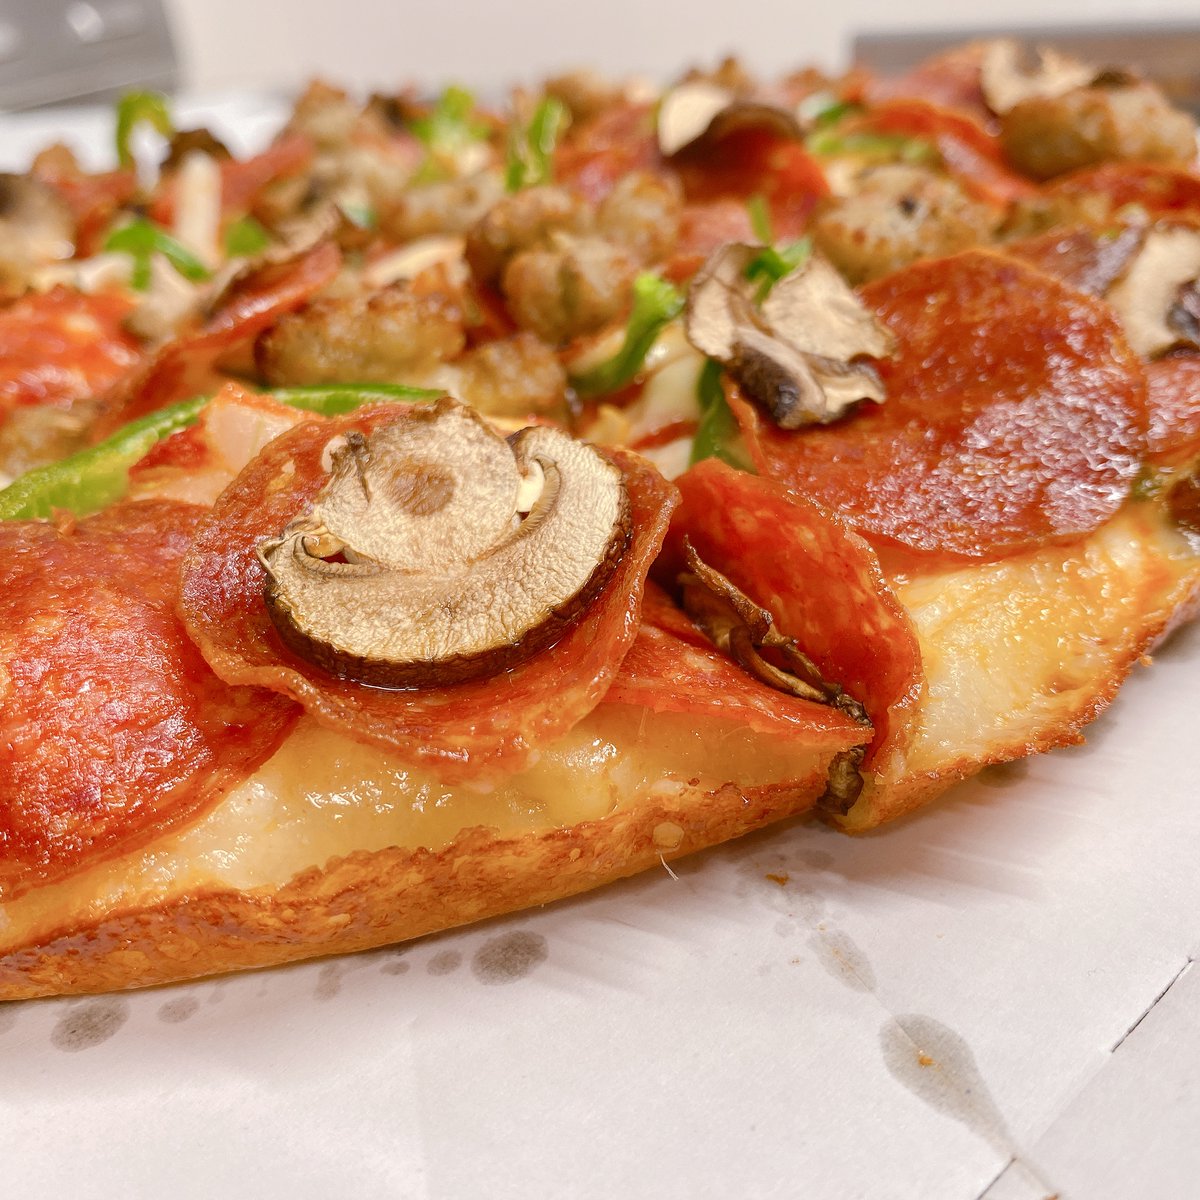 ドミノ ピザ ドミノのピザの生地 8種類から選べるって知ってた その中の一つがこのパンピザ 通常よりもふんわりとした食感で より柔らかい食感に ピザの耳が苦手な人にも食べやすいって噂 パンピザ派の人いる ドミノピザ パンピザ